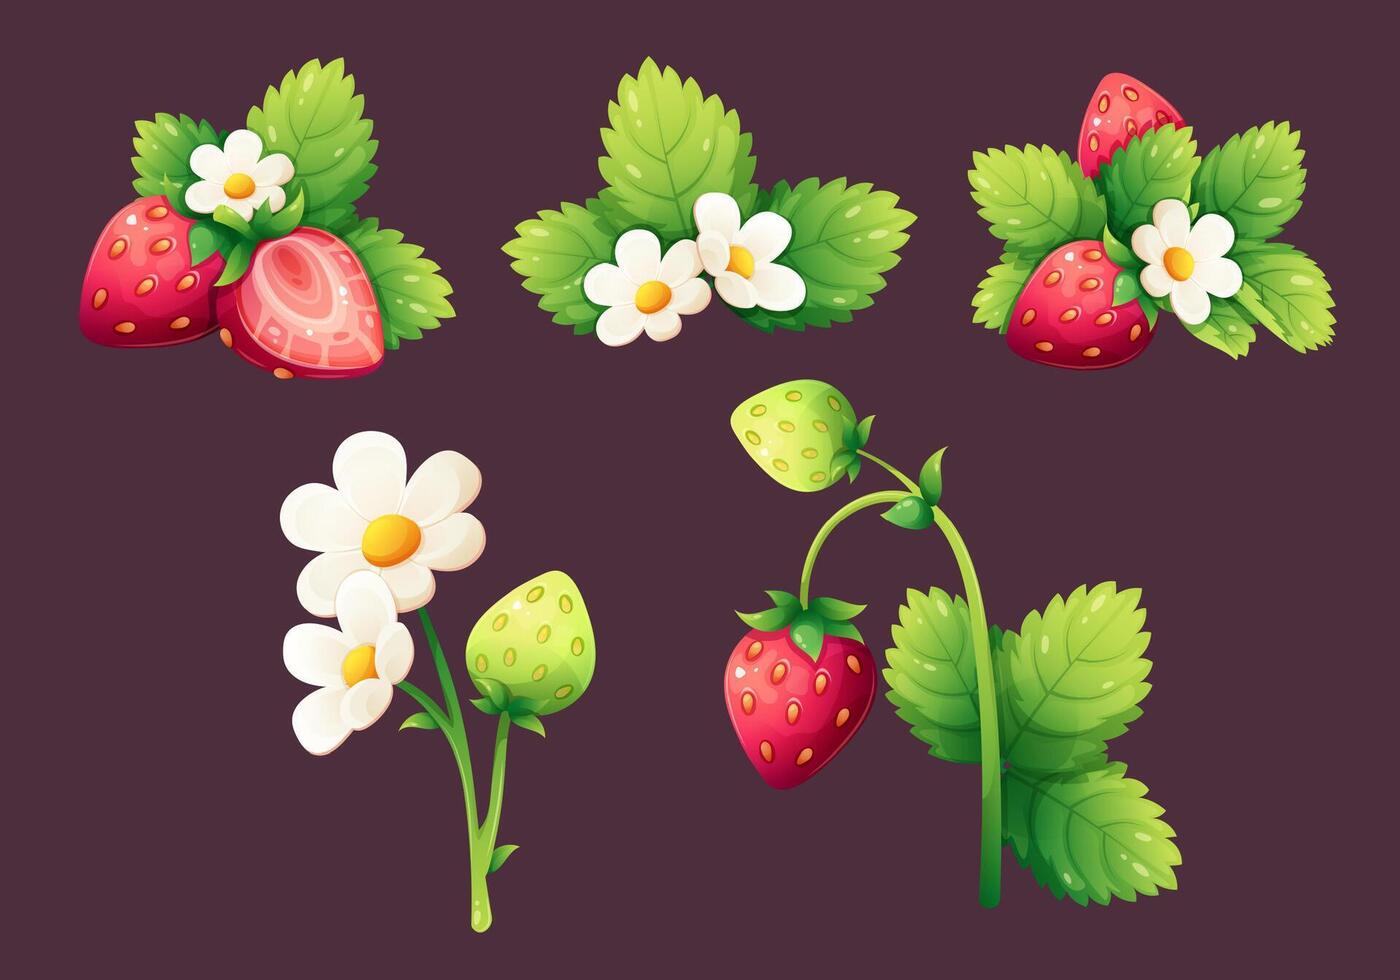 uppsättning av jordgubbar. röd och omogen jordgubbar med vit blomma och löv. tecknad serie vektor illustration i lutning för organisk Produkter, sommar desserter och drycker